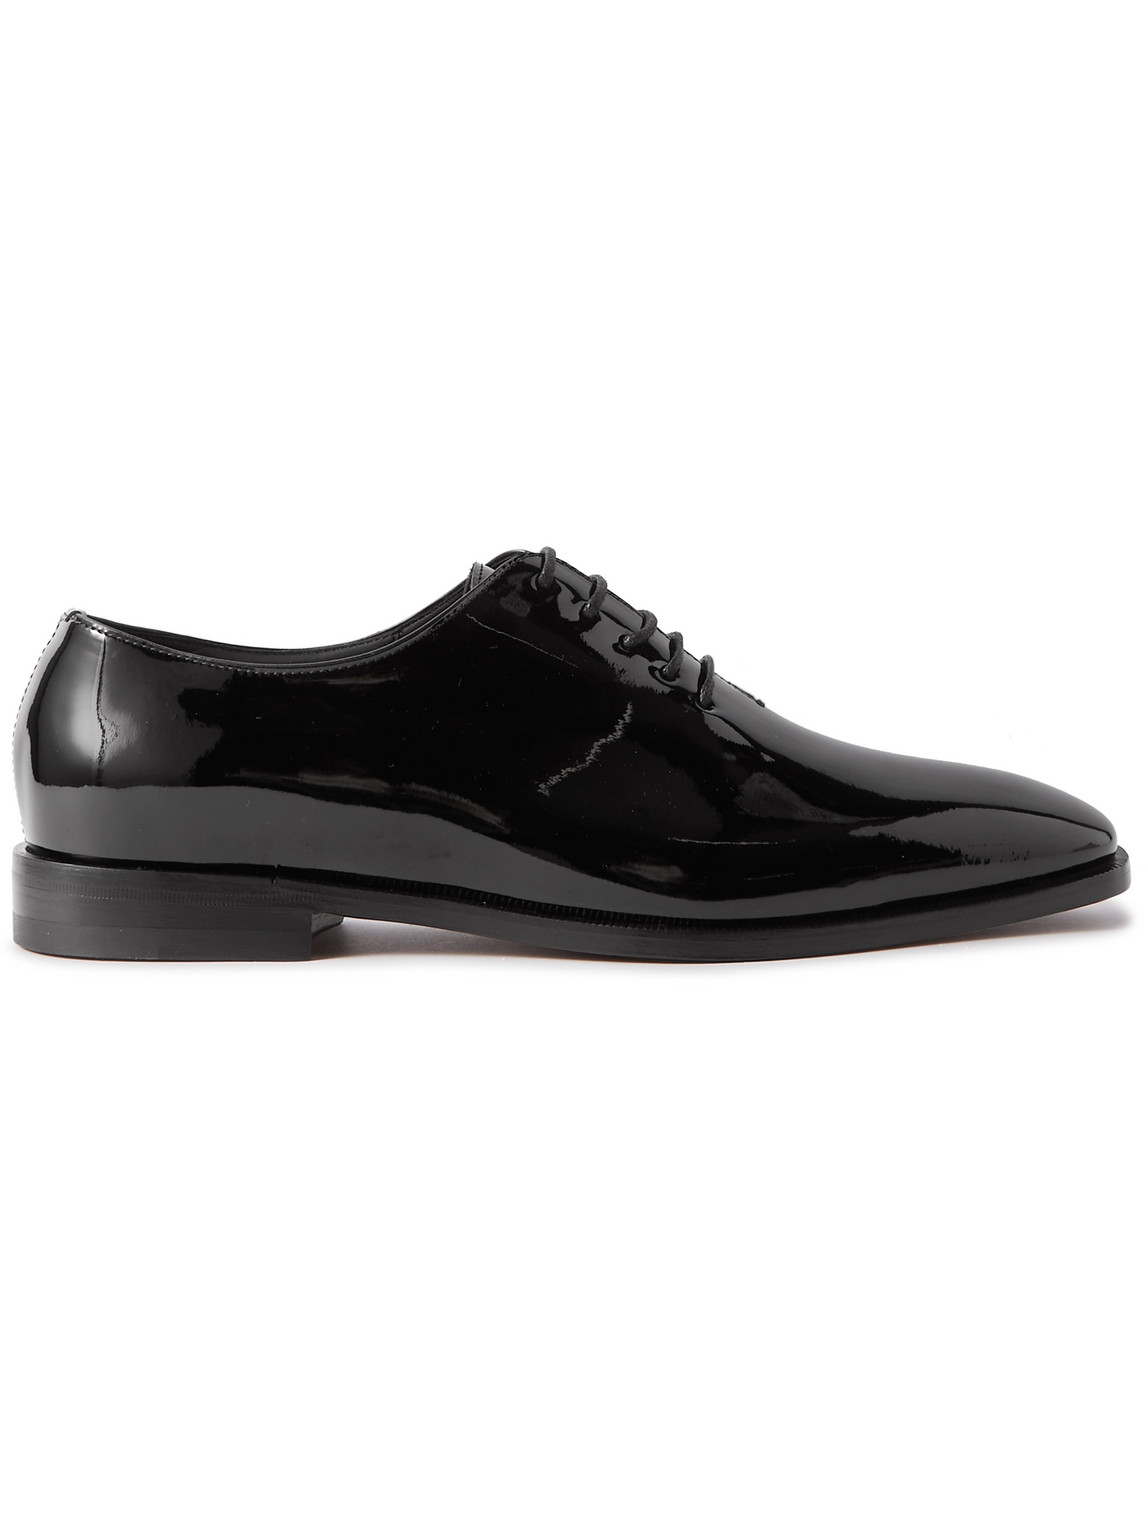 Manolo Blahnik - Whole-Cut Patent-Leather Oxford Shoes - Men - Black - UK 9 von Manolo Blahnik